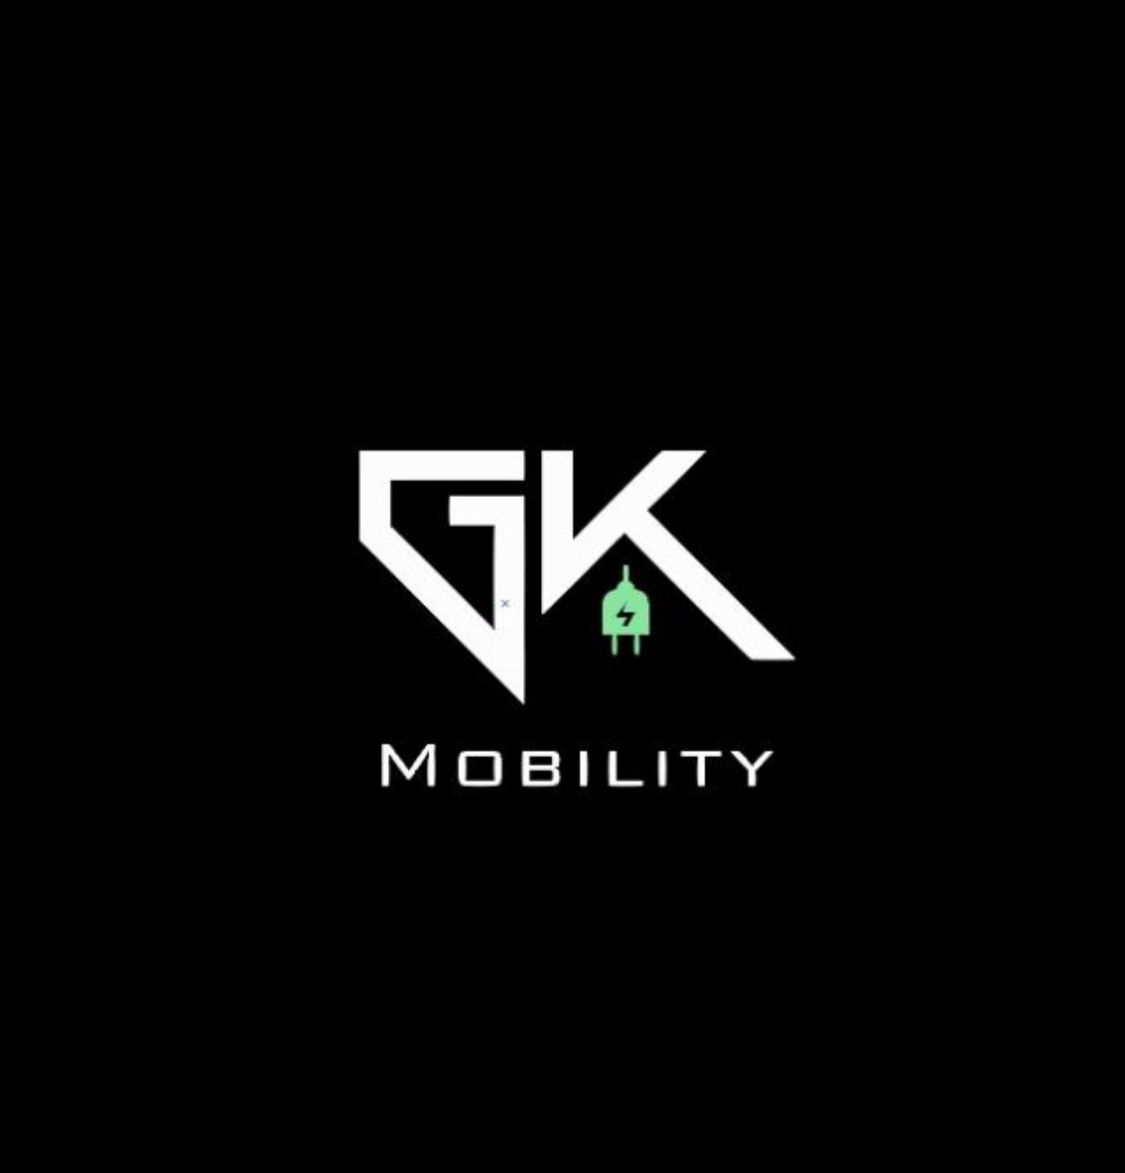 GK Mobility